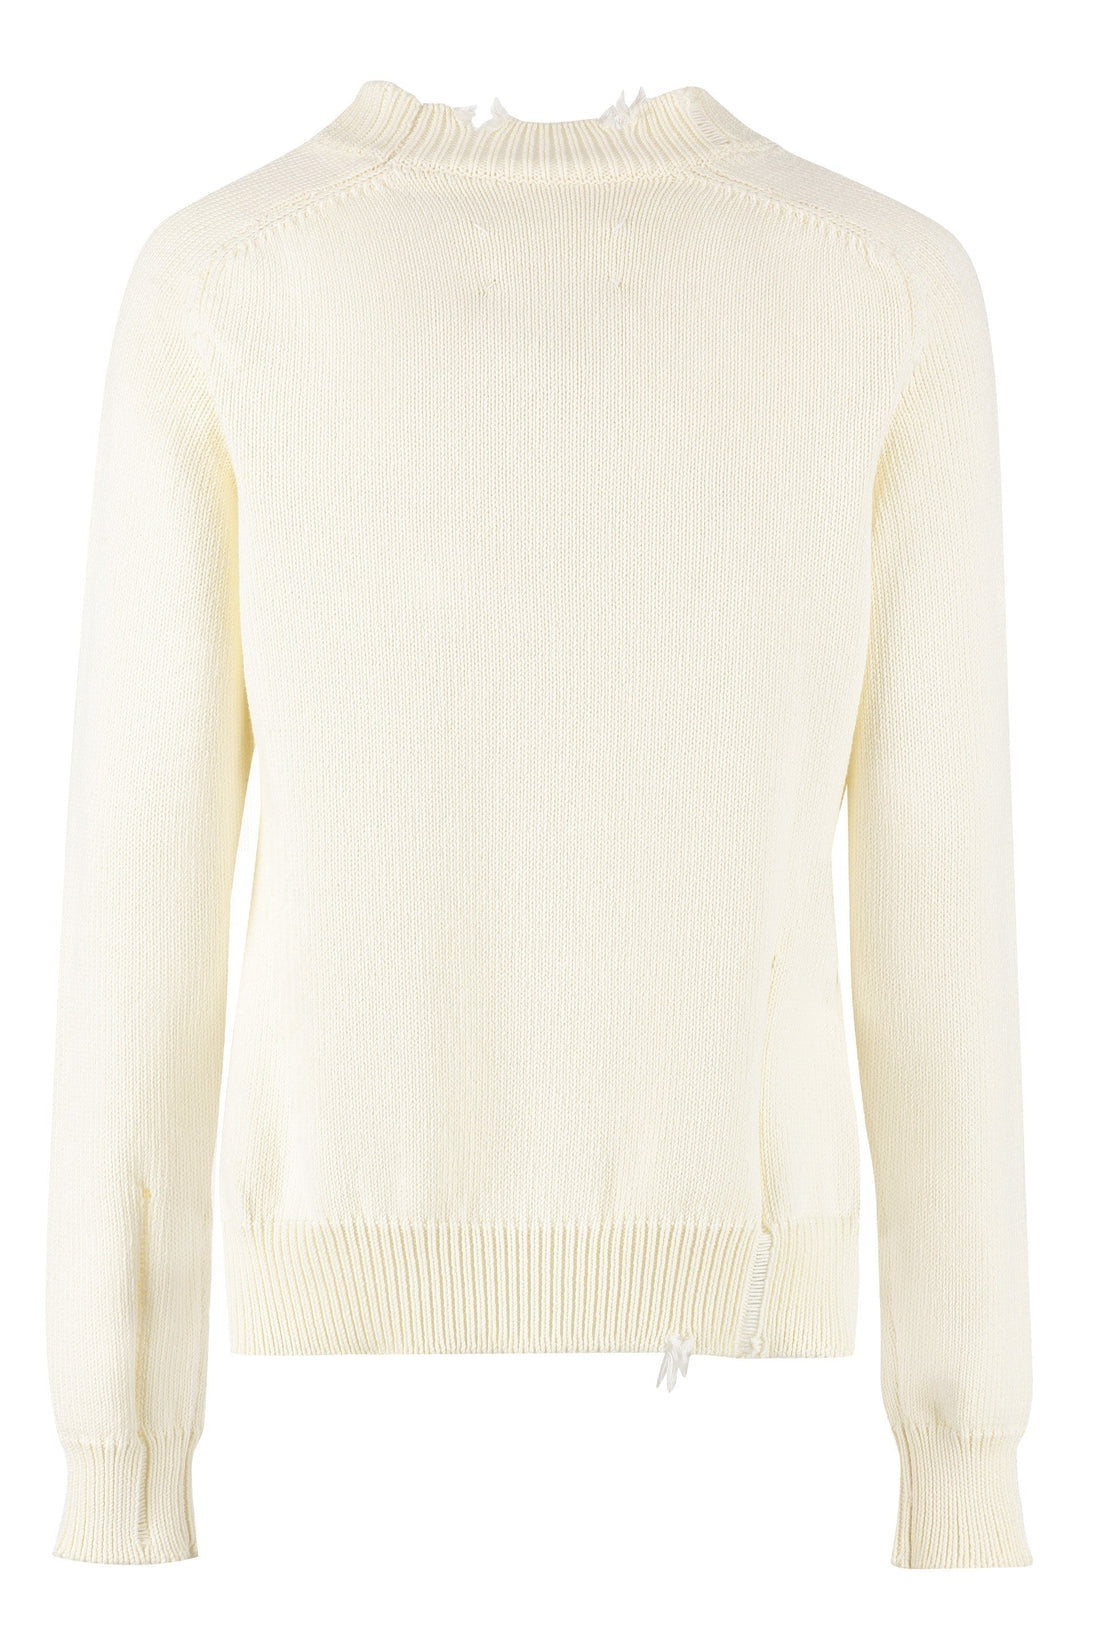 Maison Margiela-OUTLET-SALE-Long sleeve sweater-ARCHIVIST